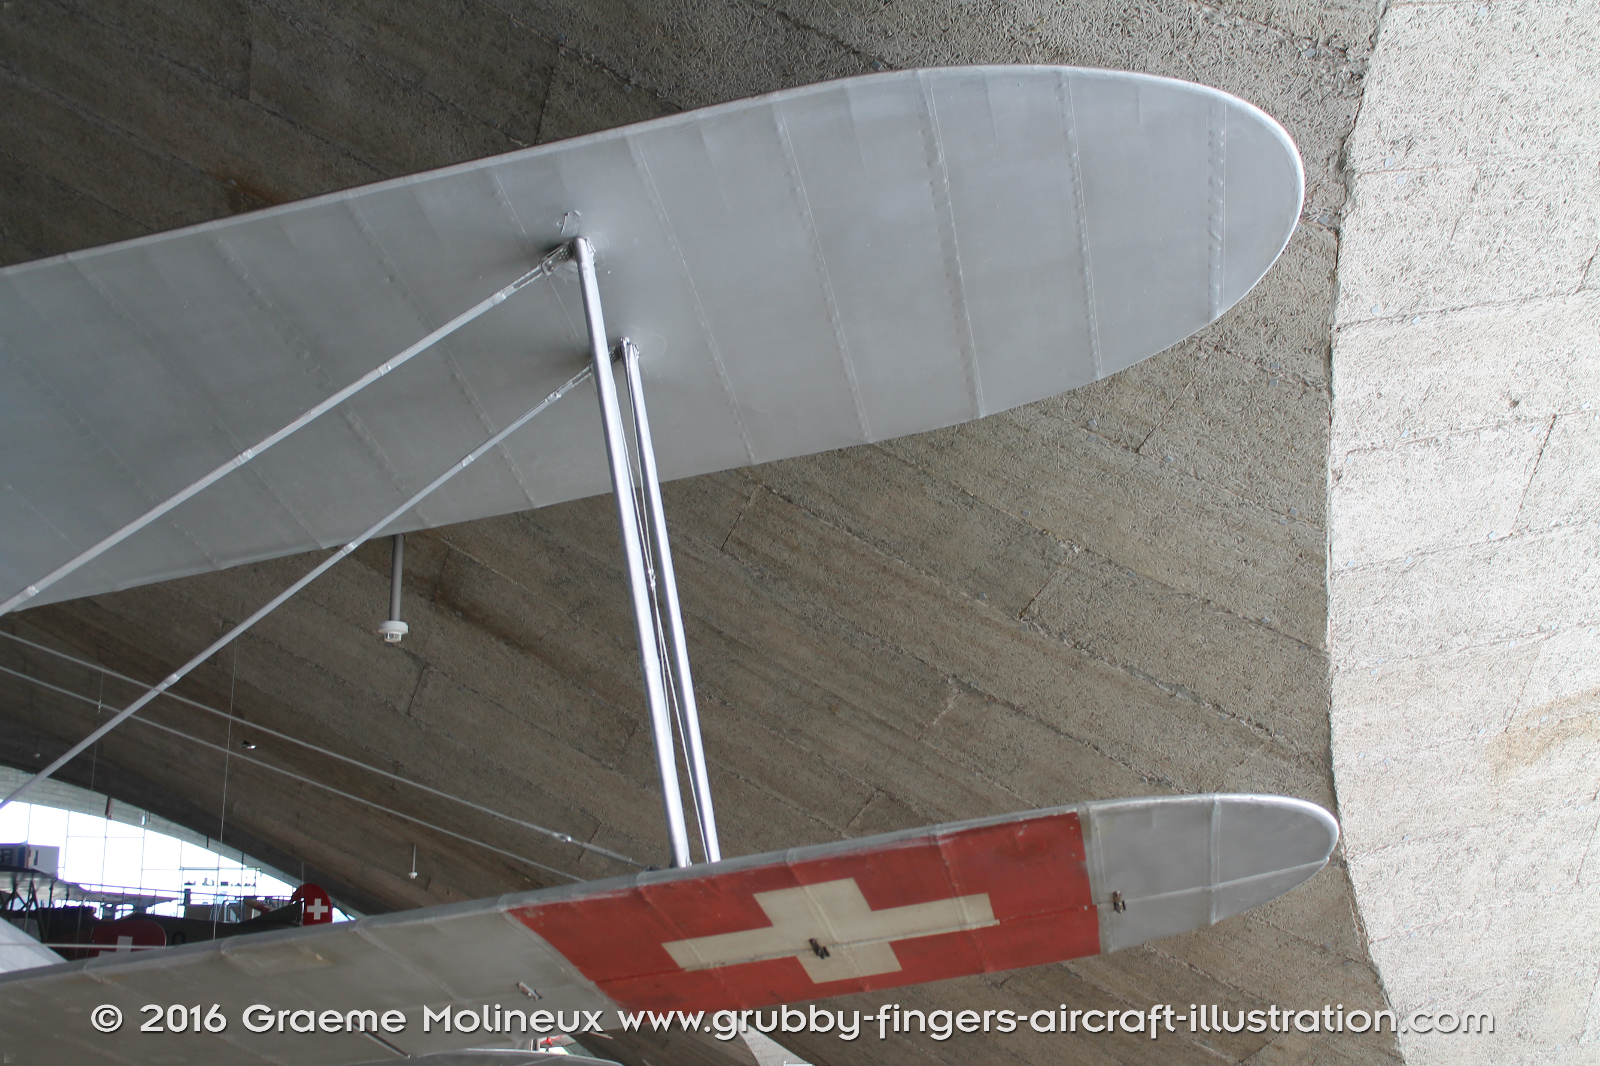 NIEUPORT_N-28_Swiss_Air_Force_Museum_2015_05_GrubbyFingers